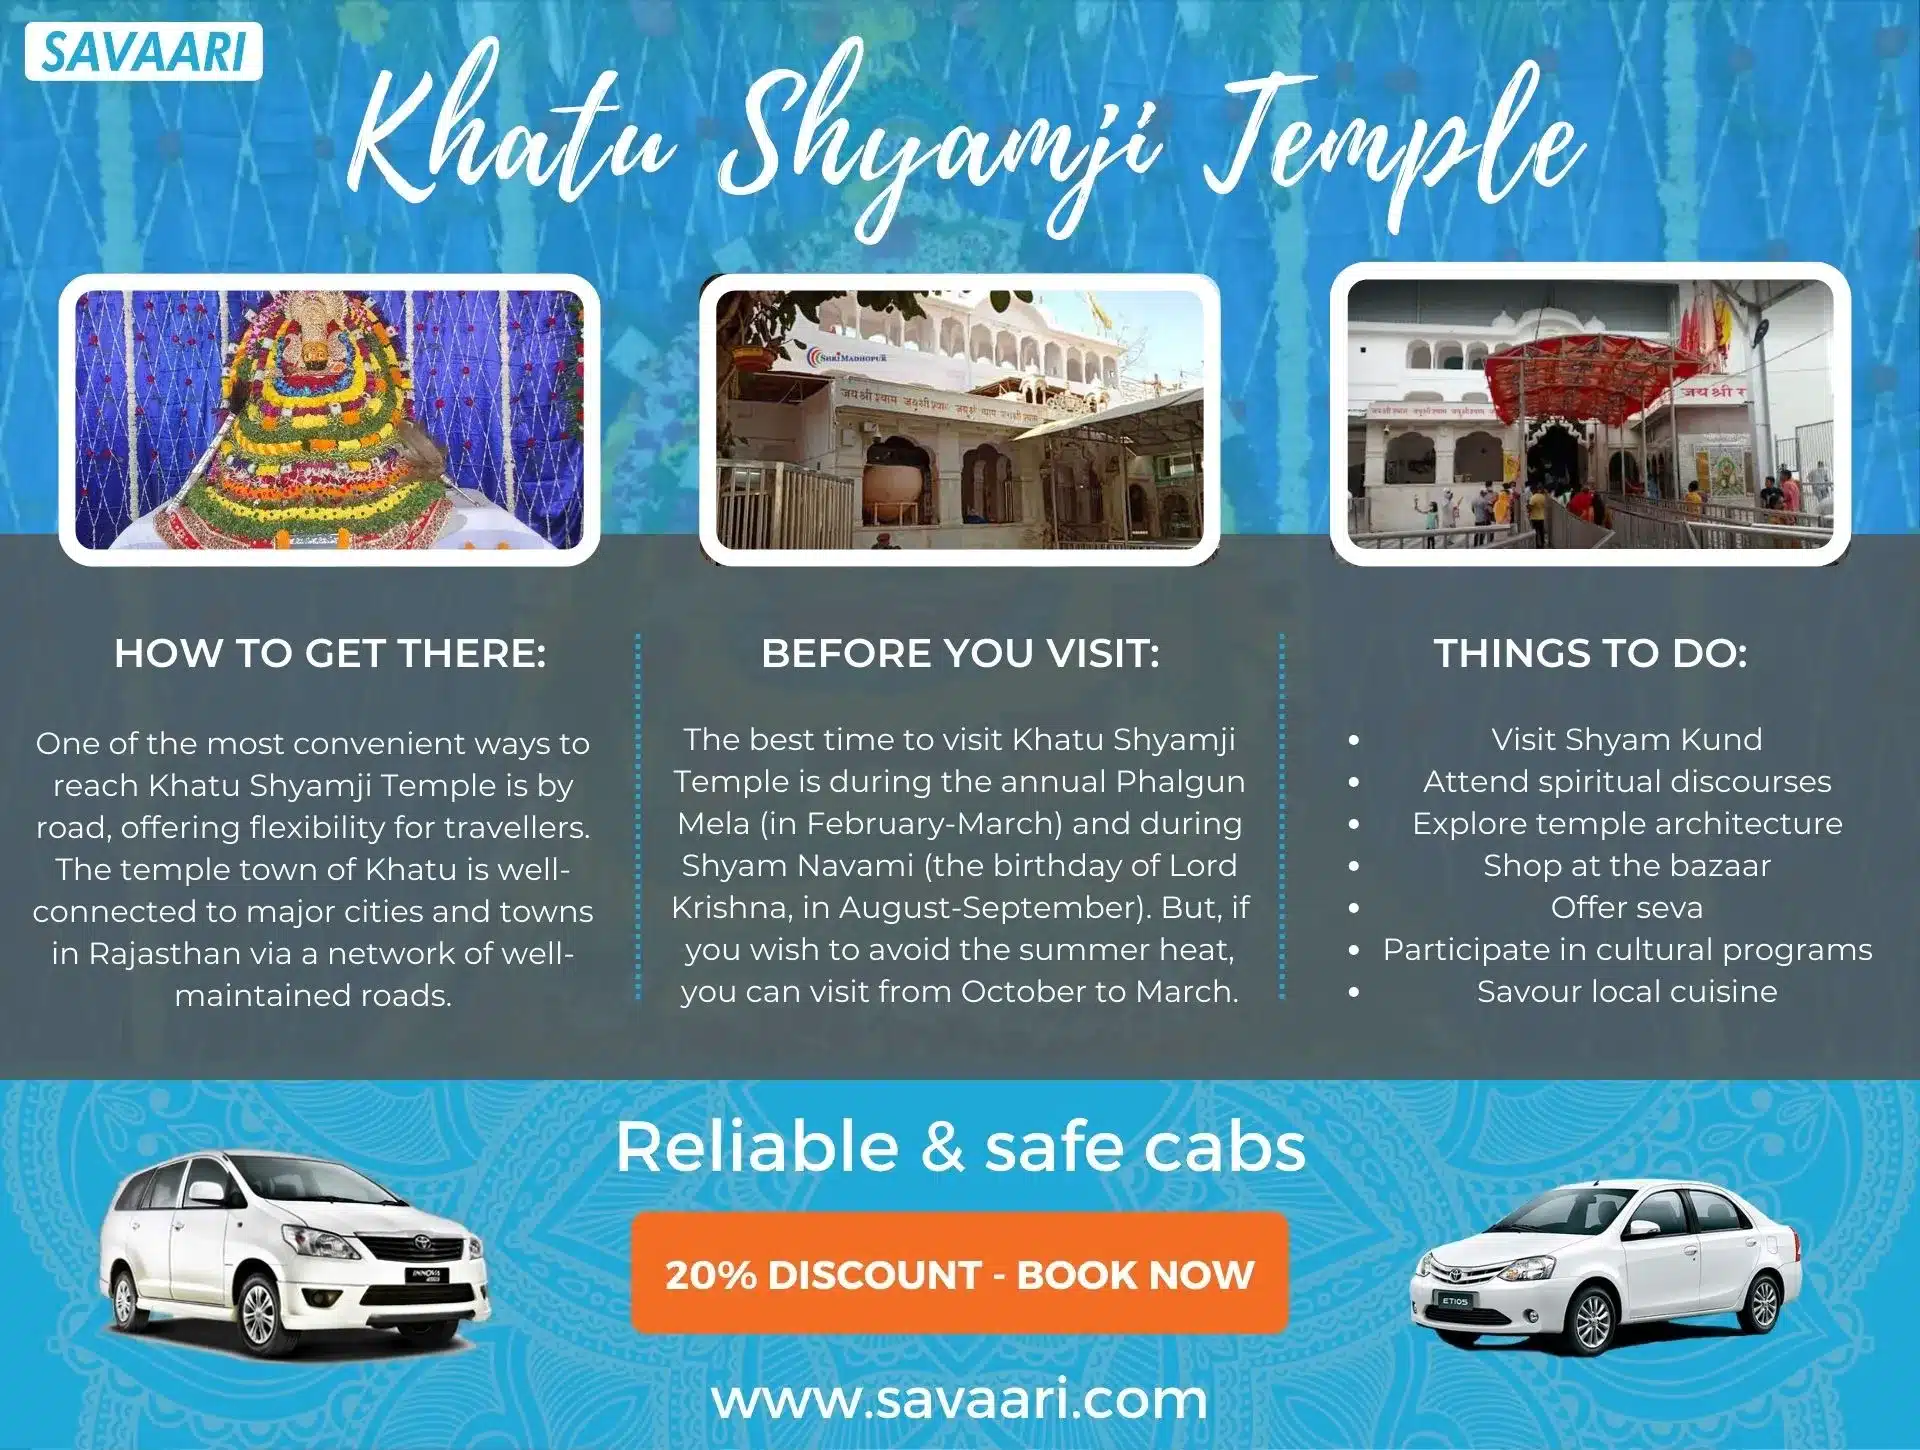 Things to do in Khatu Shyamji Temple